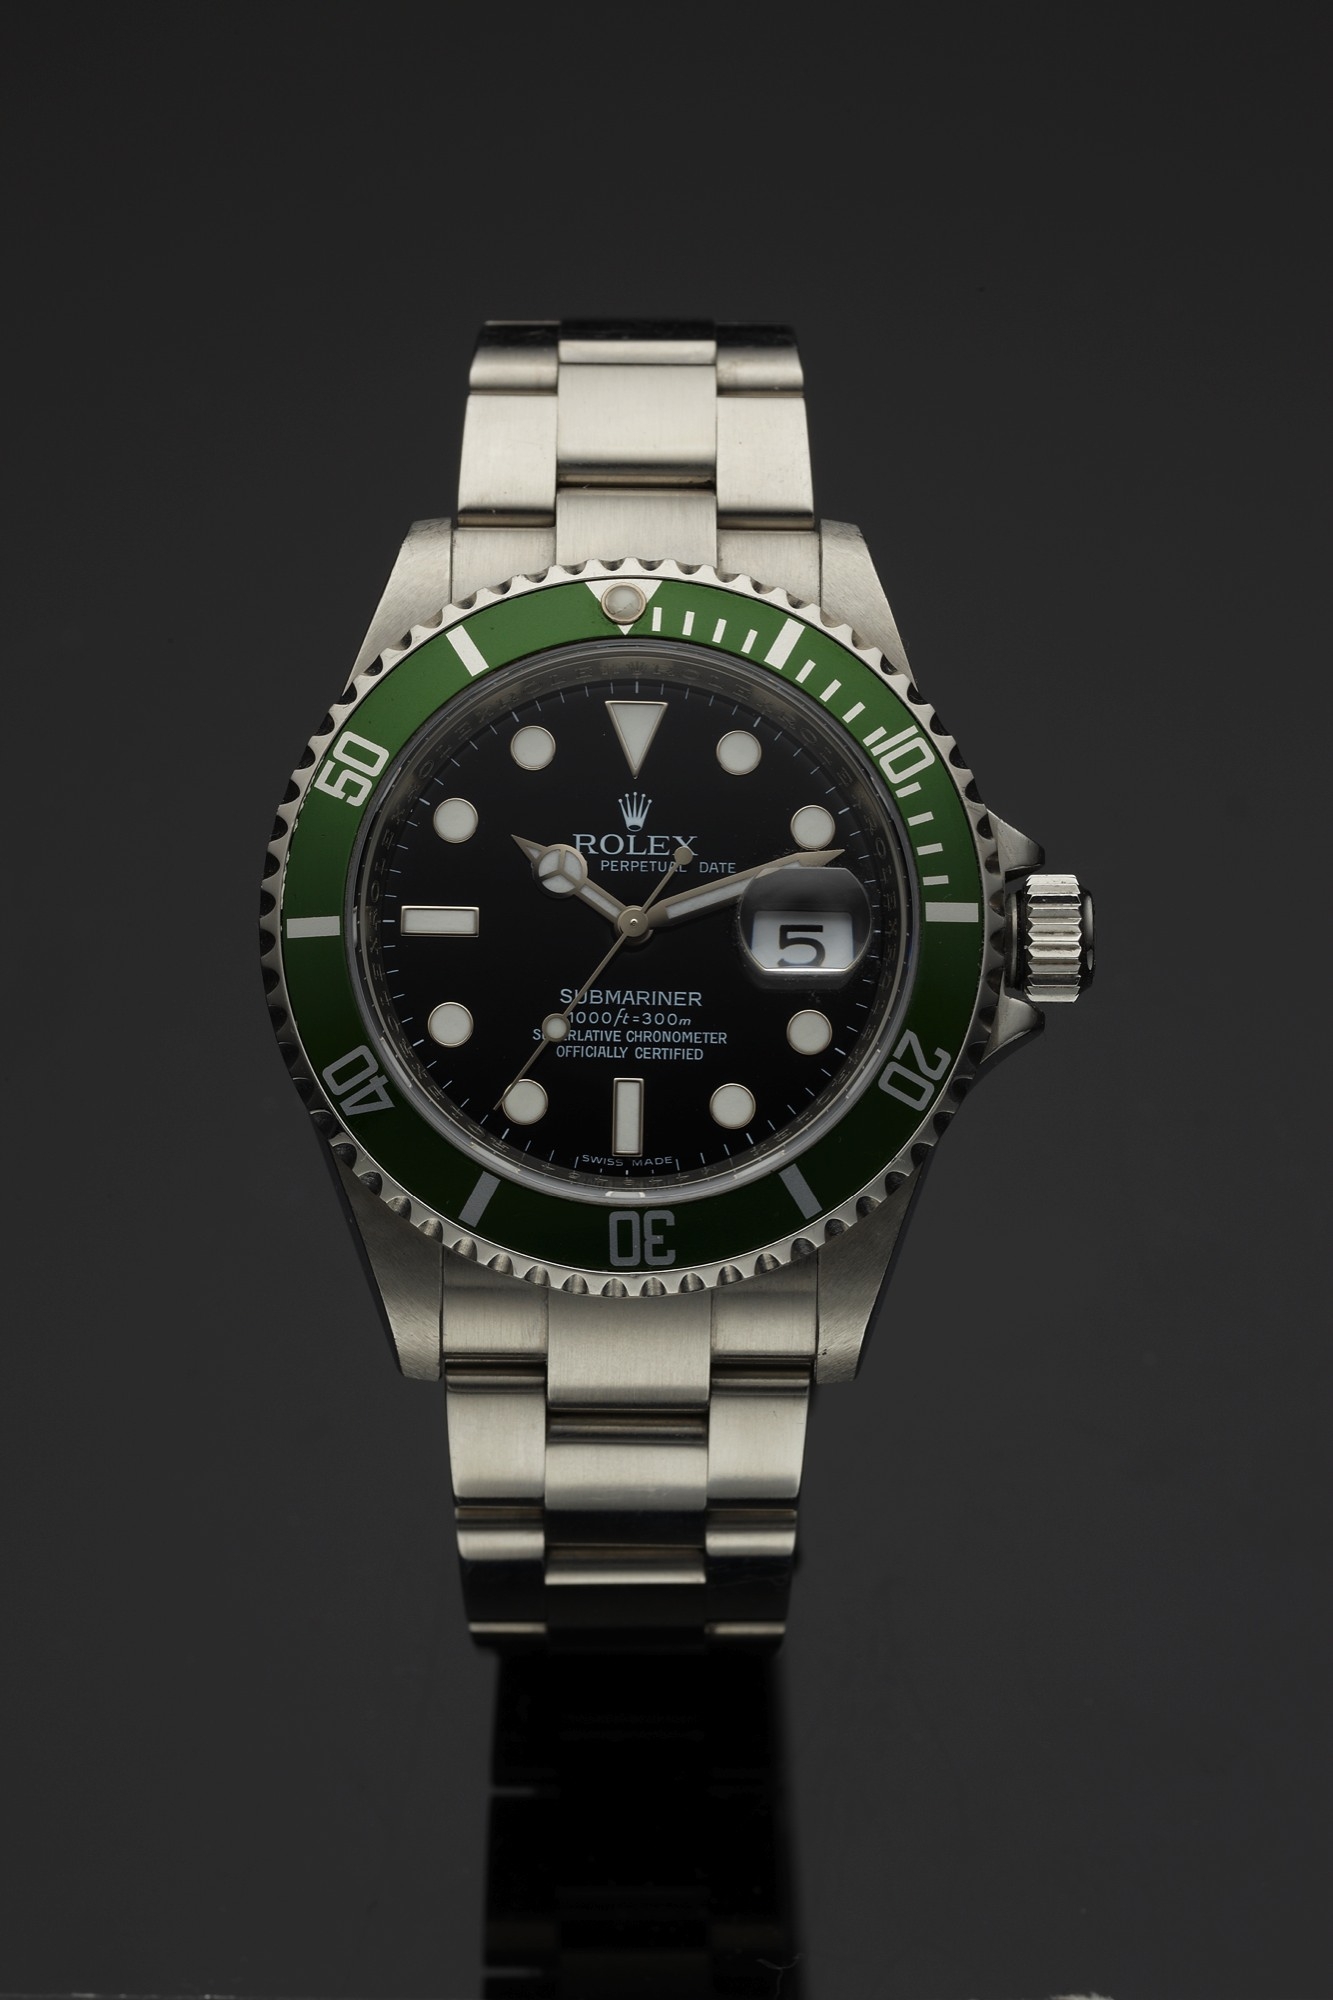 Rolex 16610LV MK2 : Submariner Date 16610 LV Mark 2 » WatchBase